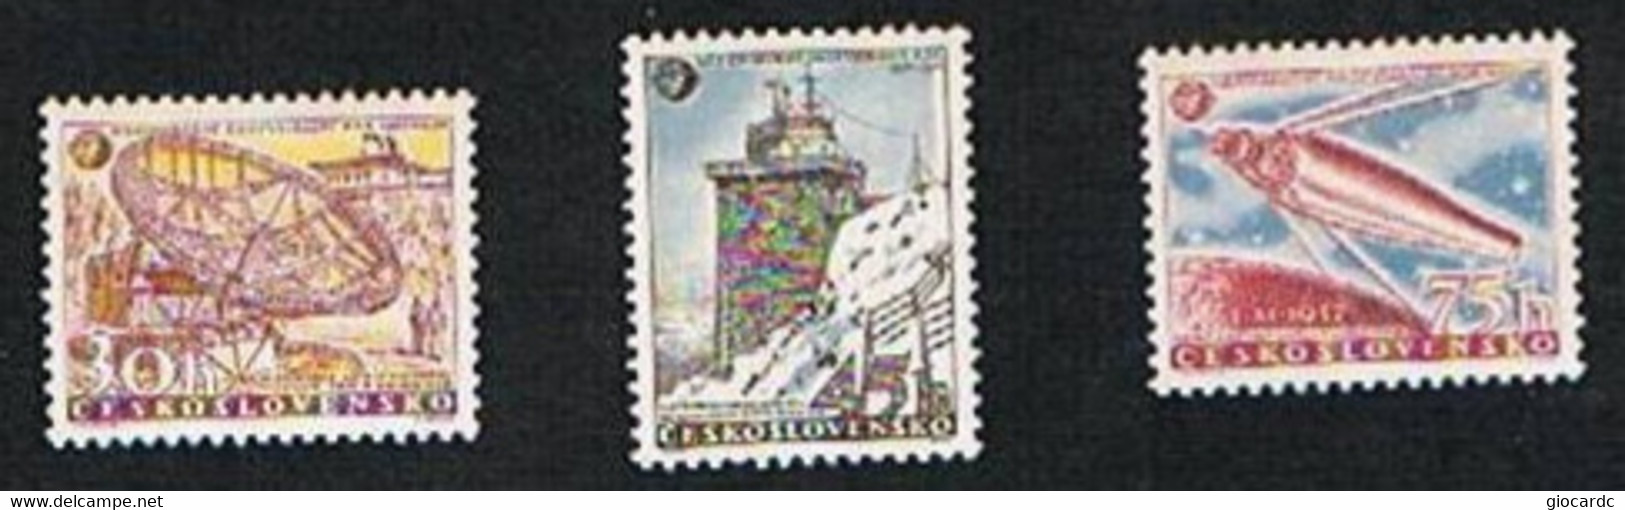 CECOSLOVACCHIA (CZECHOSLOVAKIA) - YVERT 939.941 - 1957  ANNO GEOFISICO INTERNAZIONALE    - NUOVI (MINT) ** - Nuovi